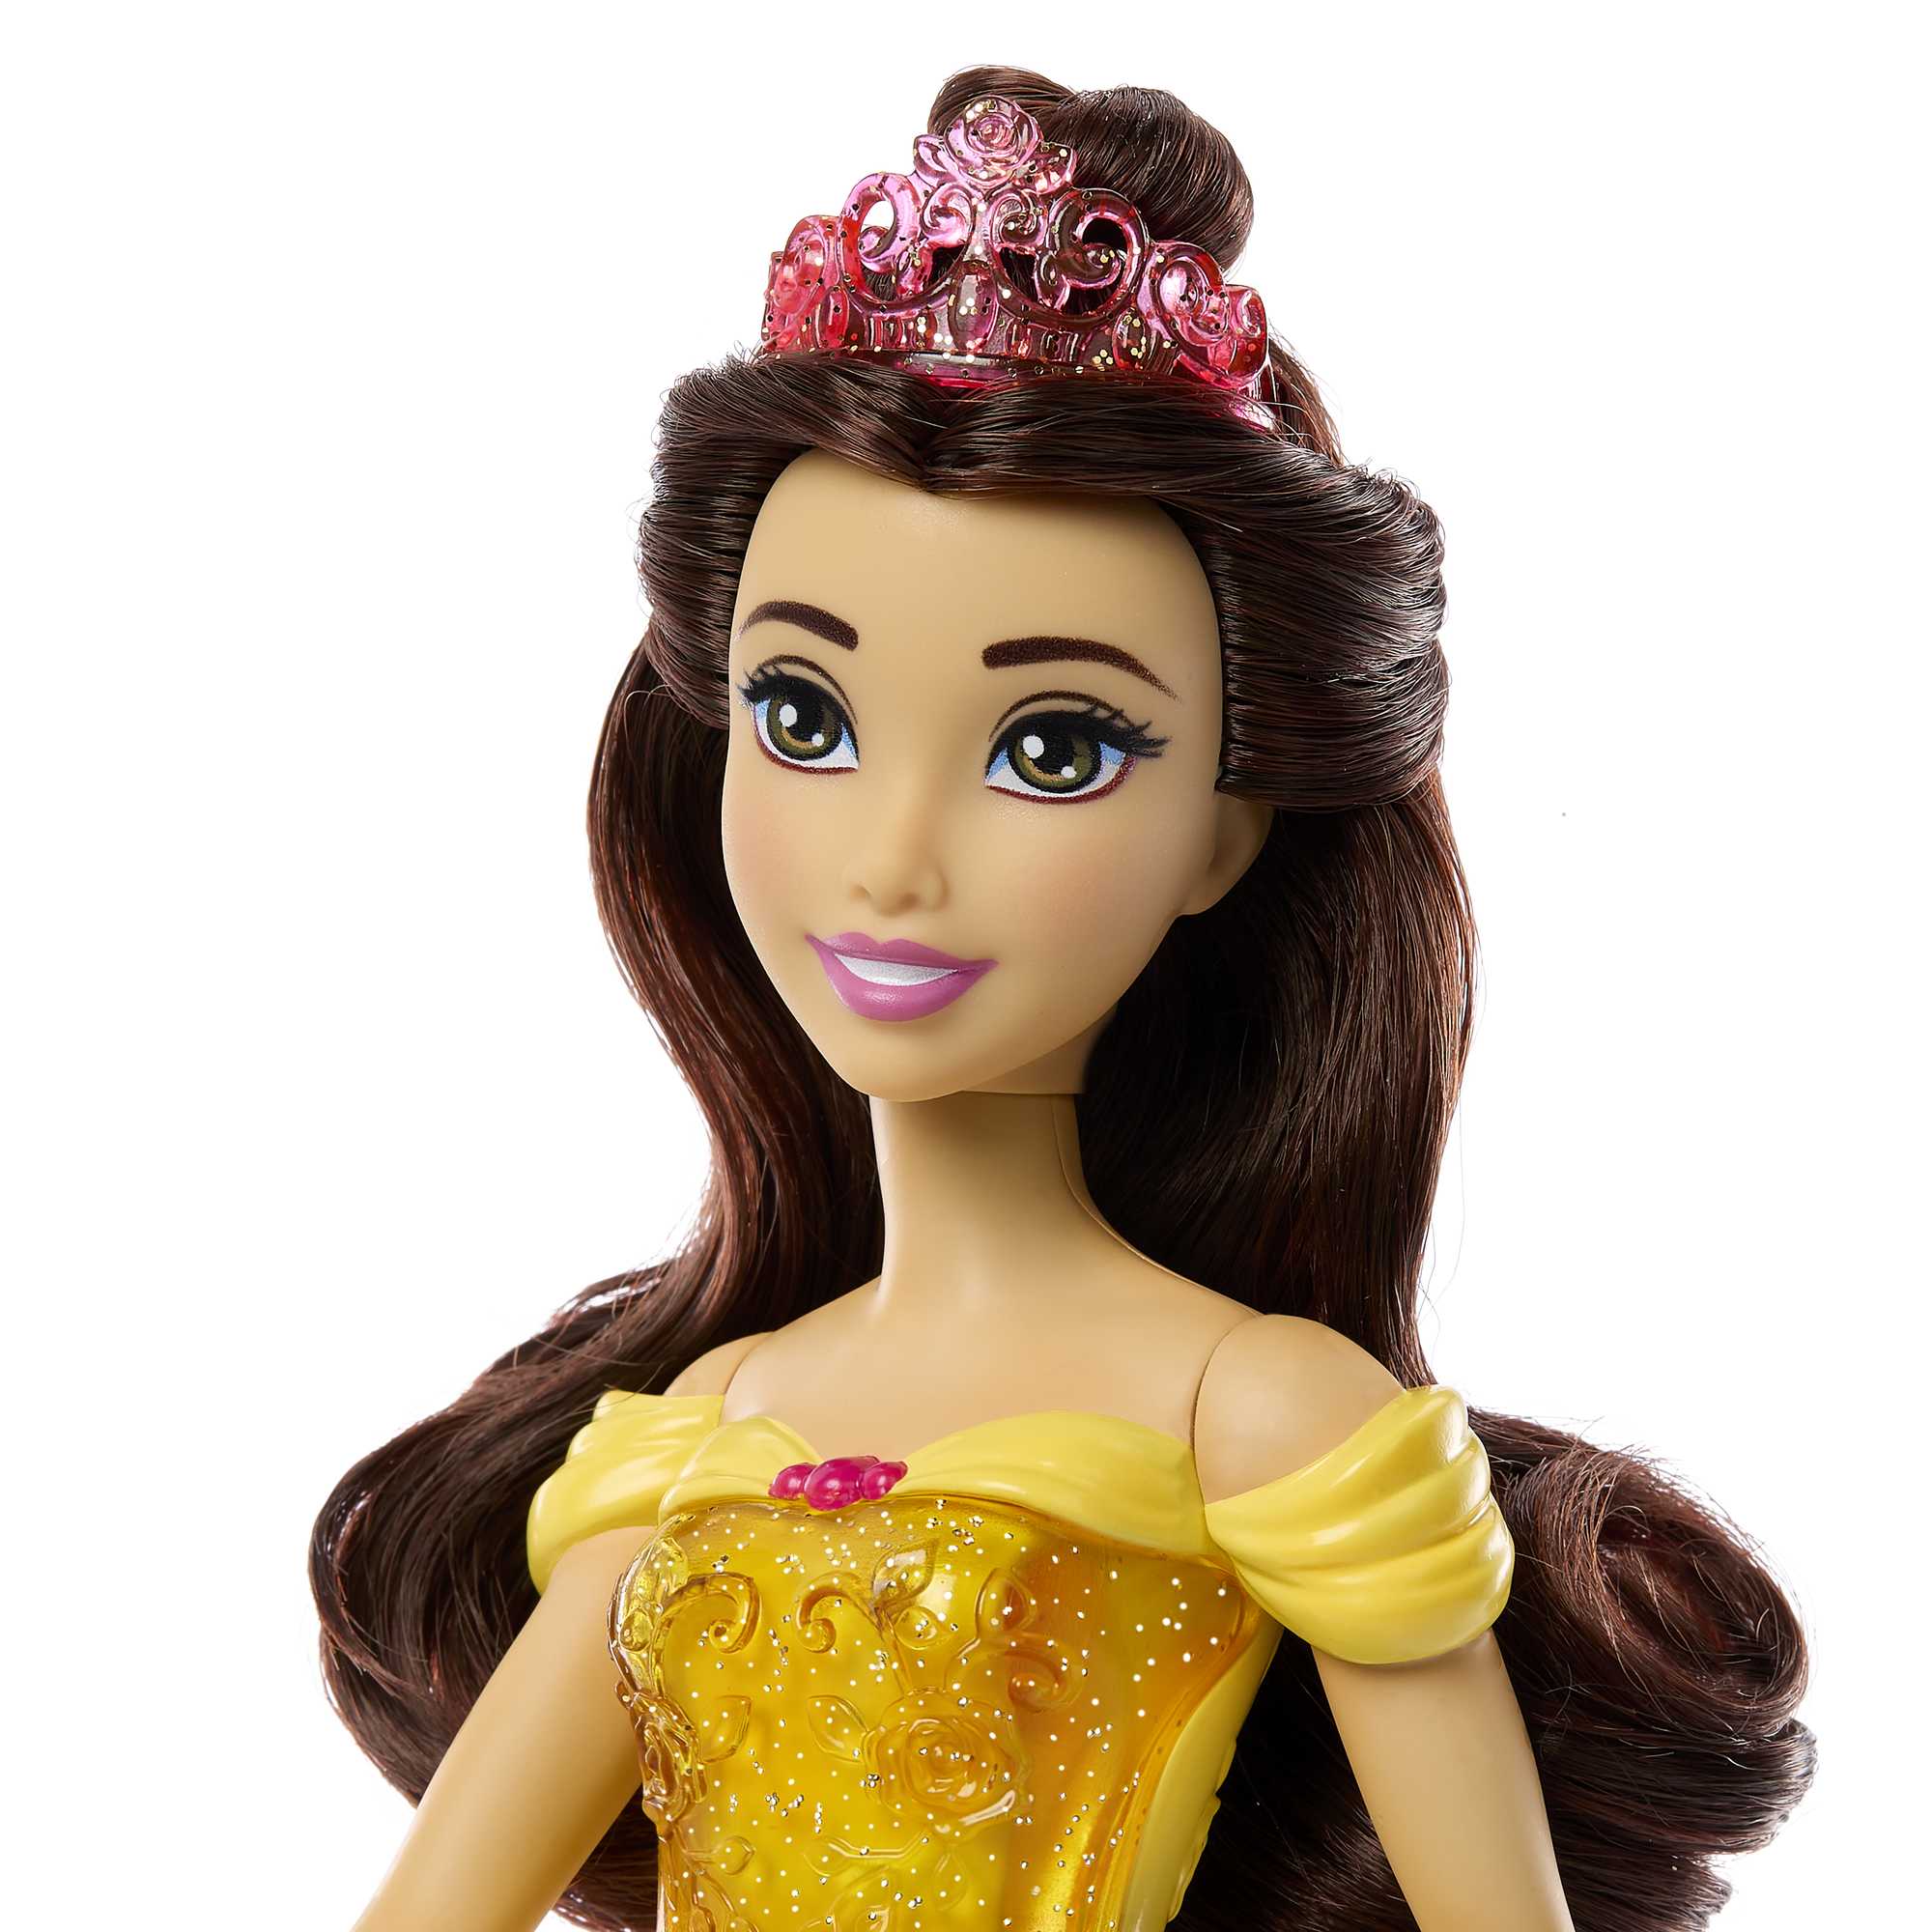 Mattel Poupée Disney Princesse Belle